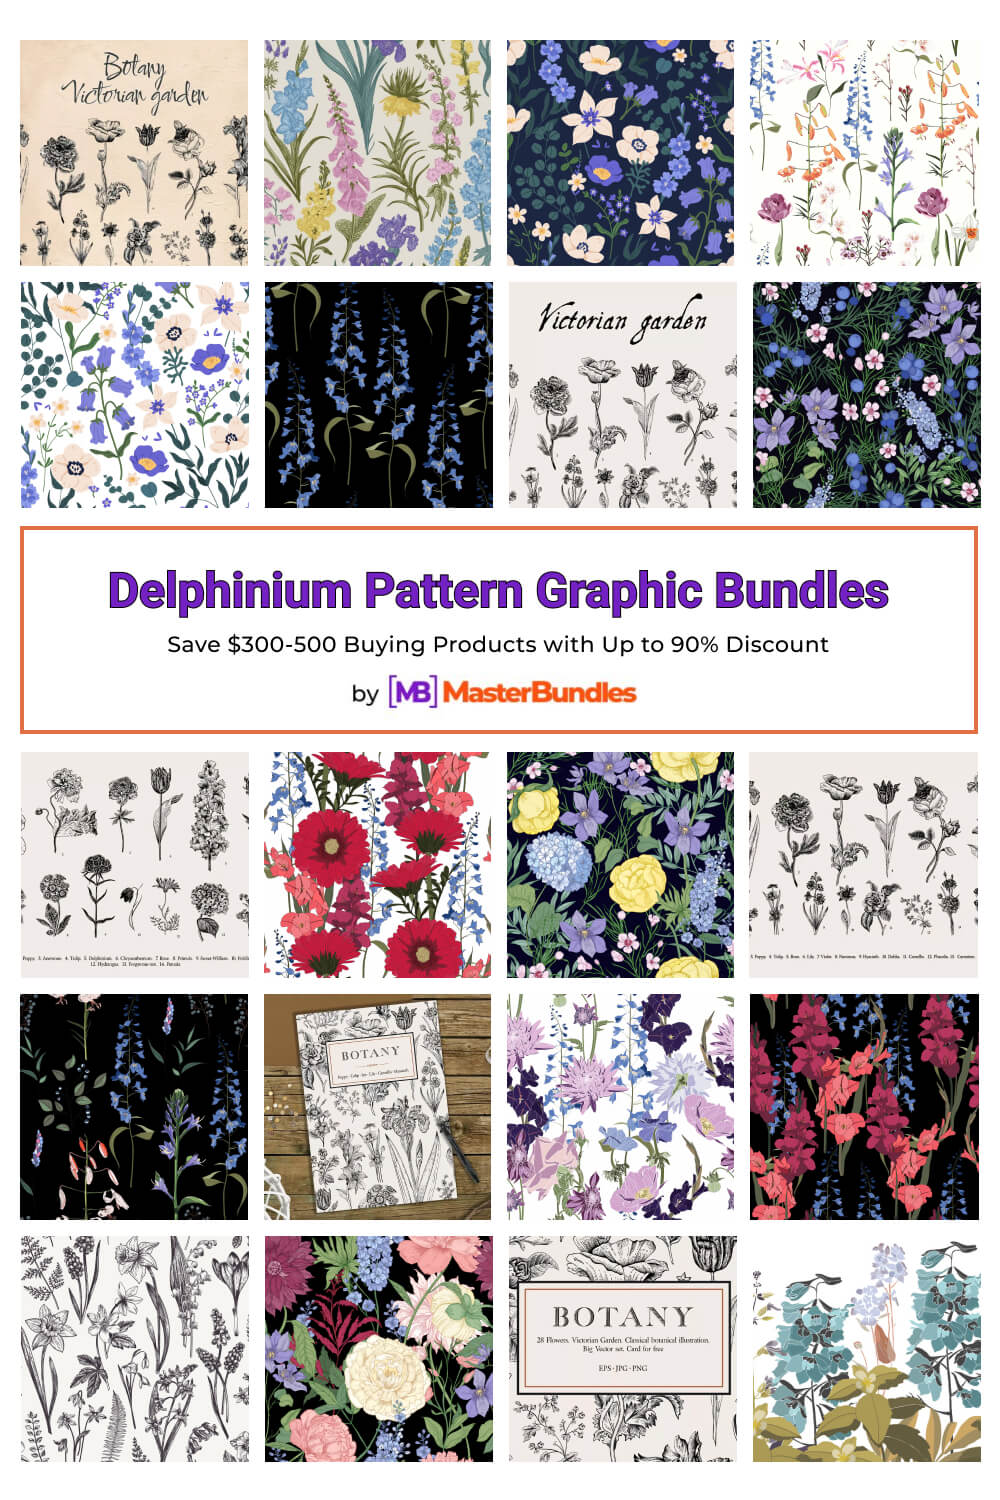 delphinium pattern graphic bundles pinterest image.